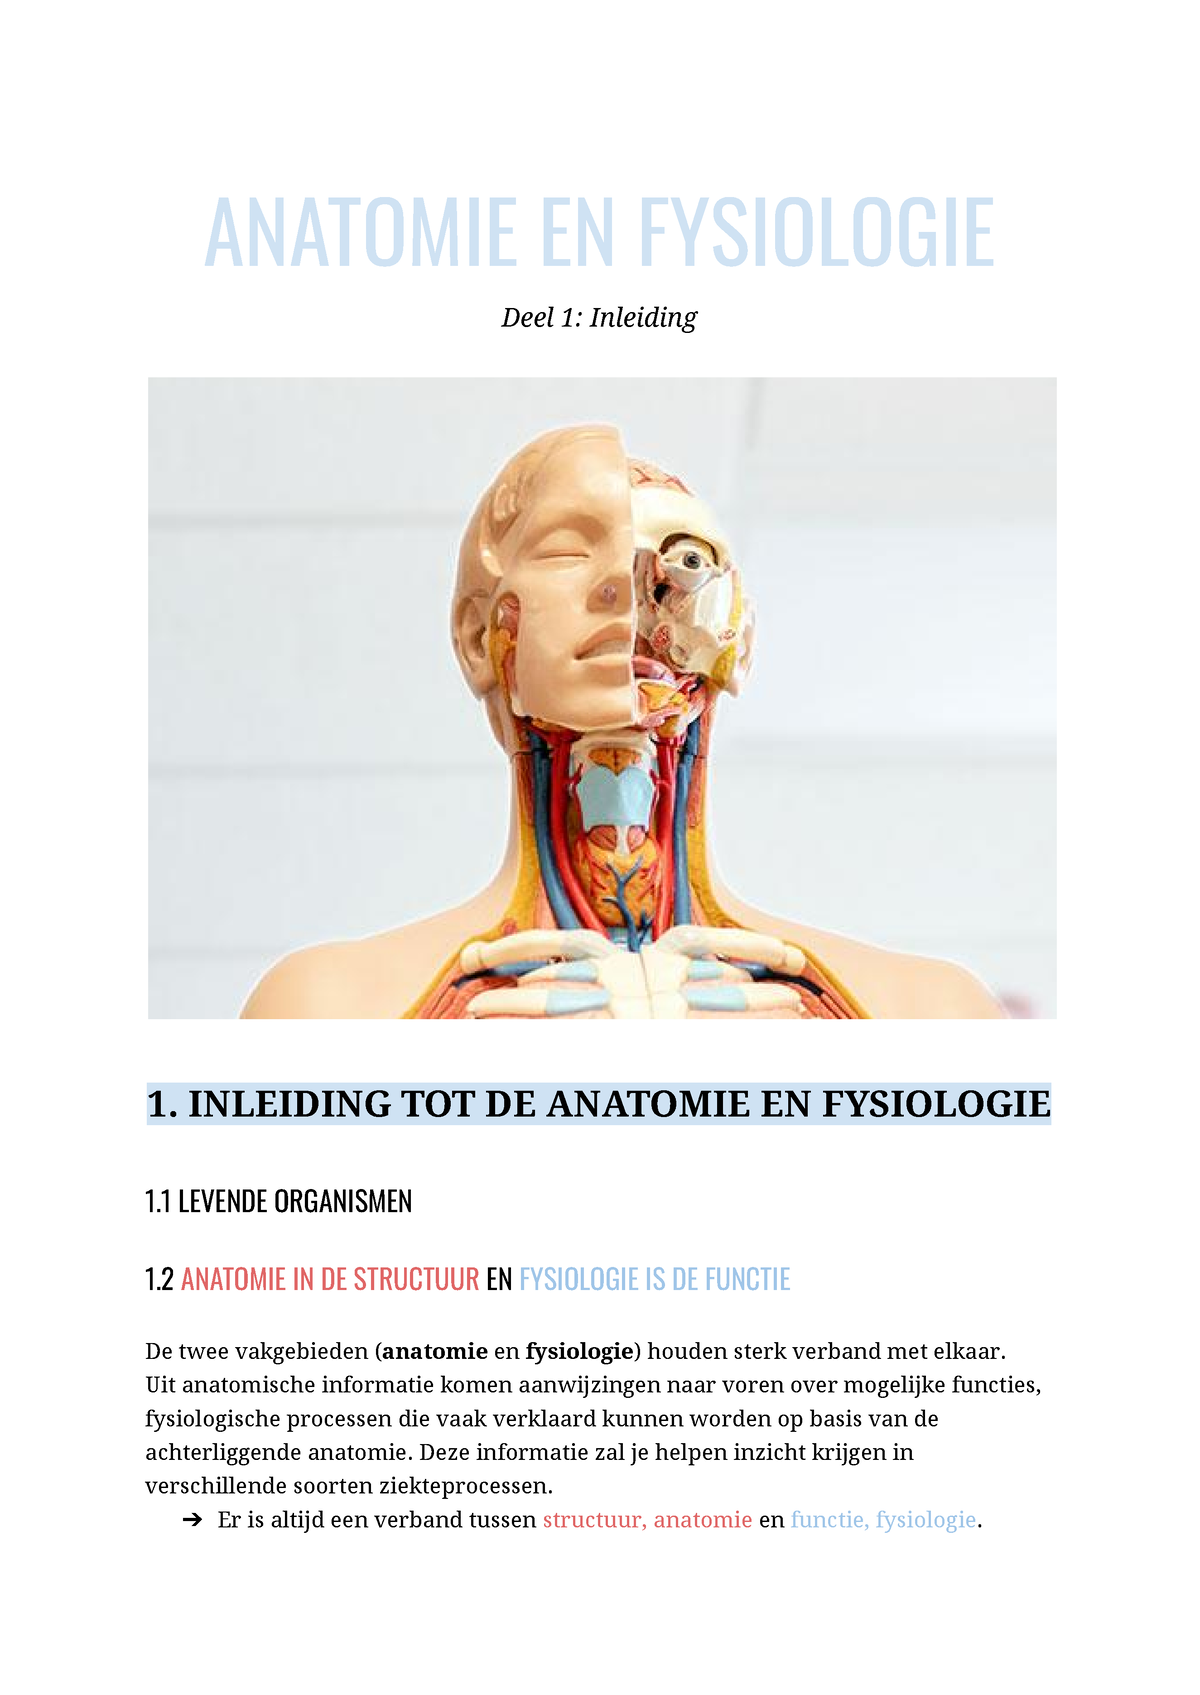 Sv Anatomie En Fysiologie Anatomie En Fysiologie Deel 1 Inleiding 1